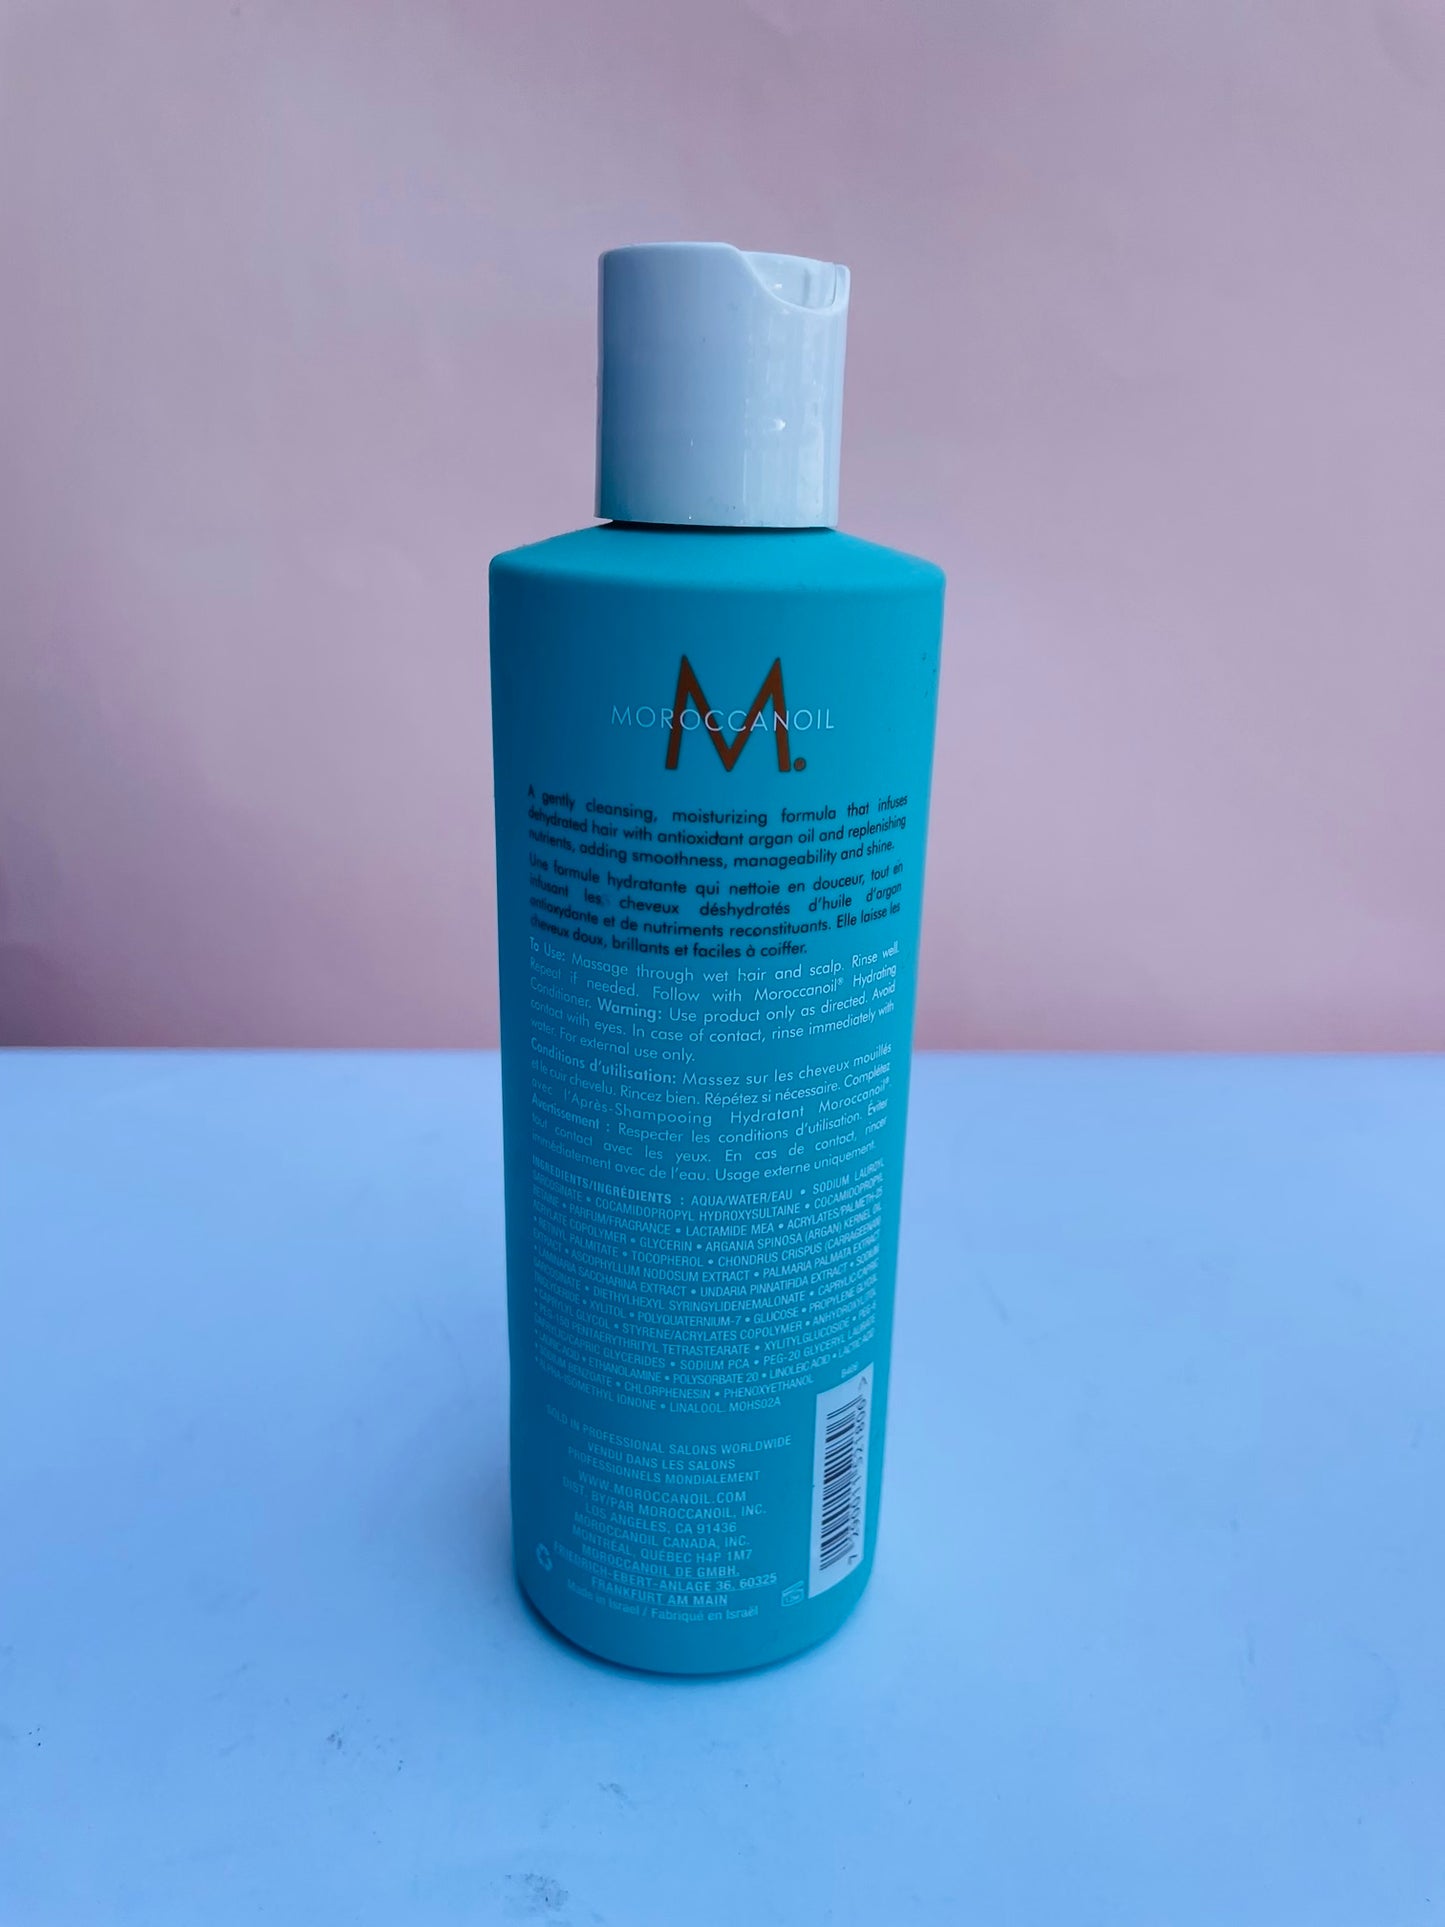 Moroccanoil hydration shampoo &conditioner